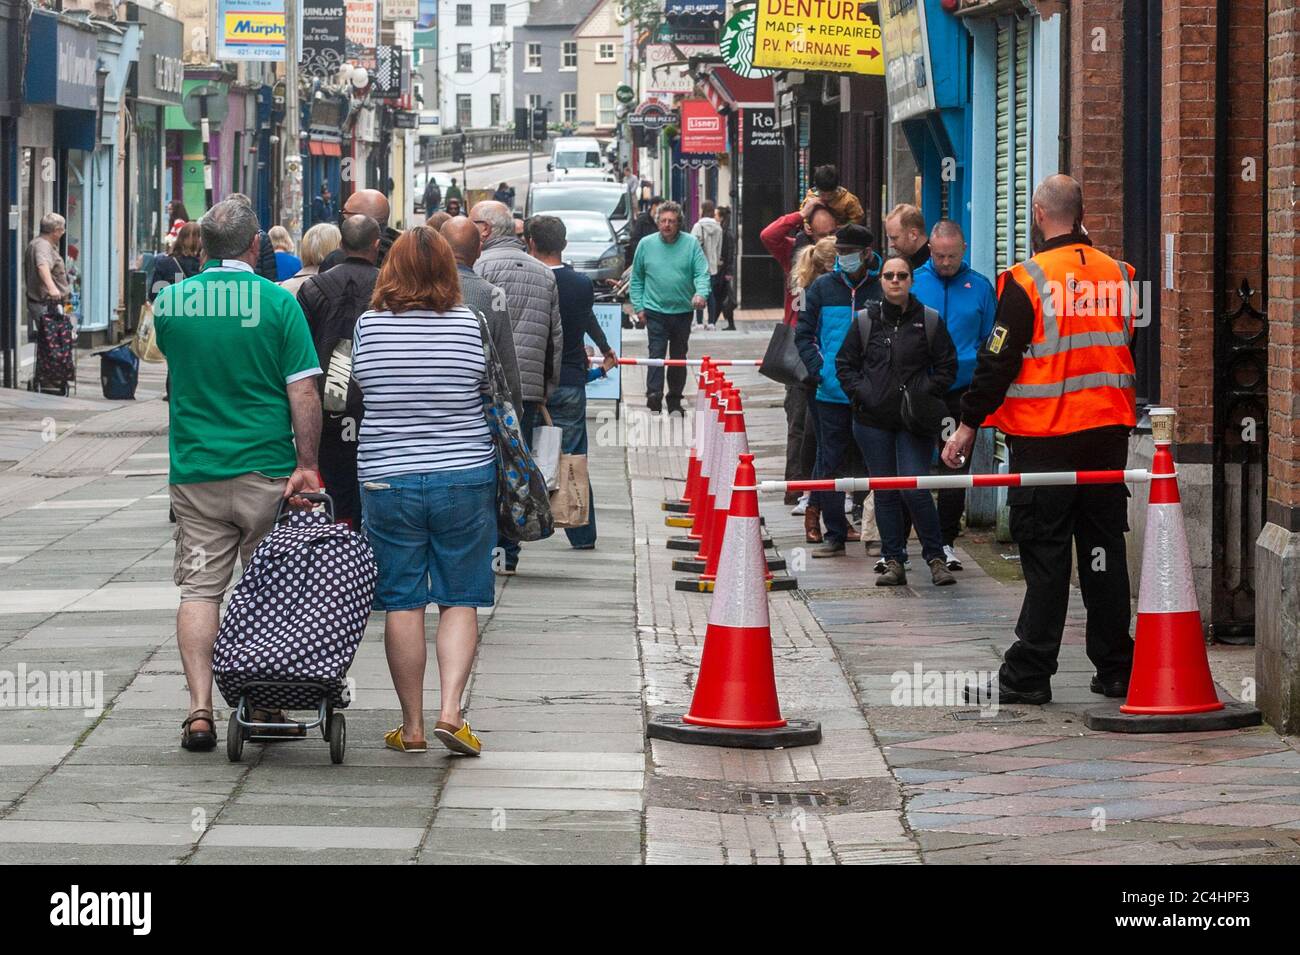 Cork, Irland. Juni 2020. Cork City war heute mit Einkäufern beschäftigt, da die Dinge nach der Coronavirus-Sperre wieder normal werden. Es gab eine große Schlange, um auf den weltberühmten englischen Markt in Cork City zu kommen. Quelle: AG News/Alamy Live News Stockfoto